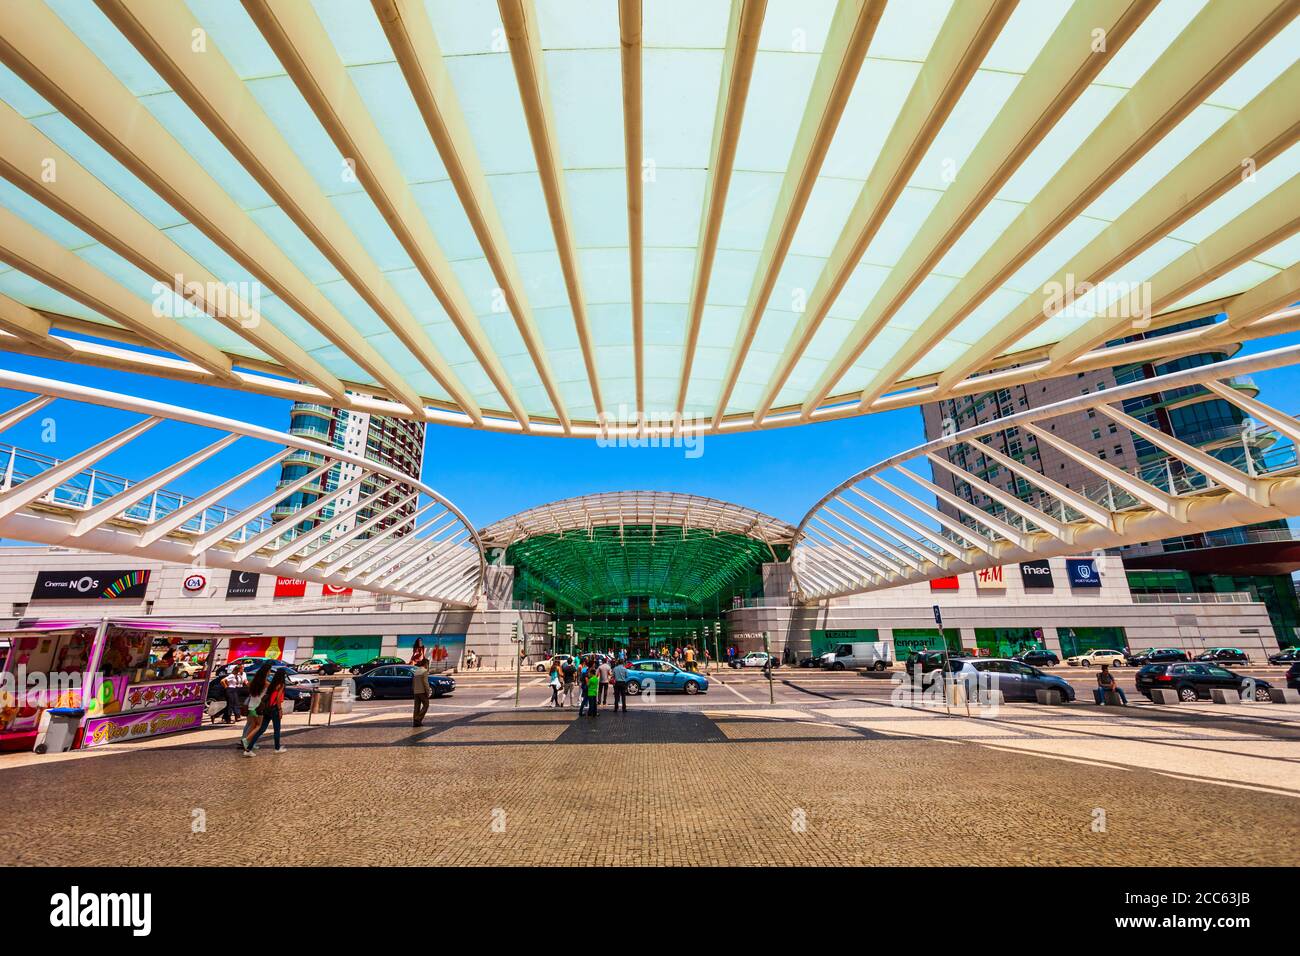 LISBONNE, PORTUGAL - 26 JUIN 2014 : Centre commercial Vasco de Gama et Gare do Oriente à Lisbonne, Portugal Banque D'Images